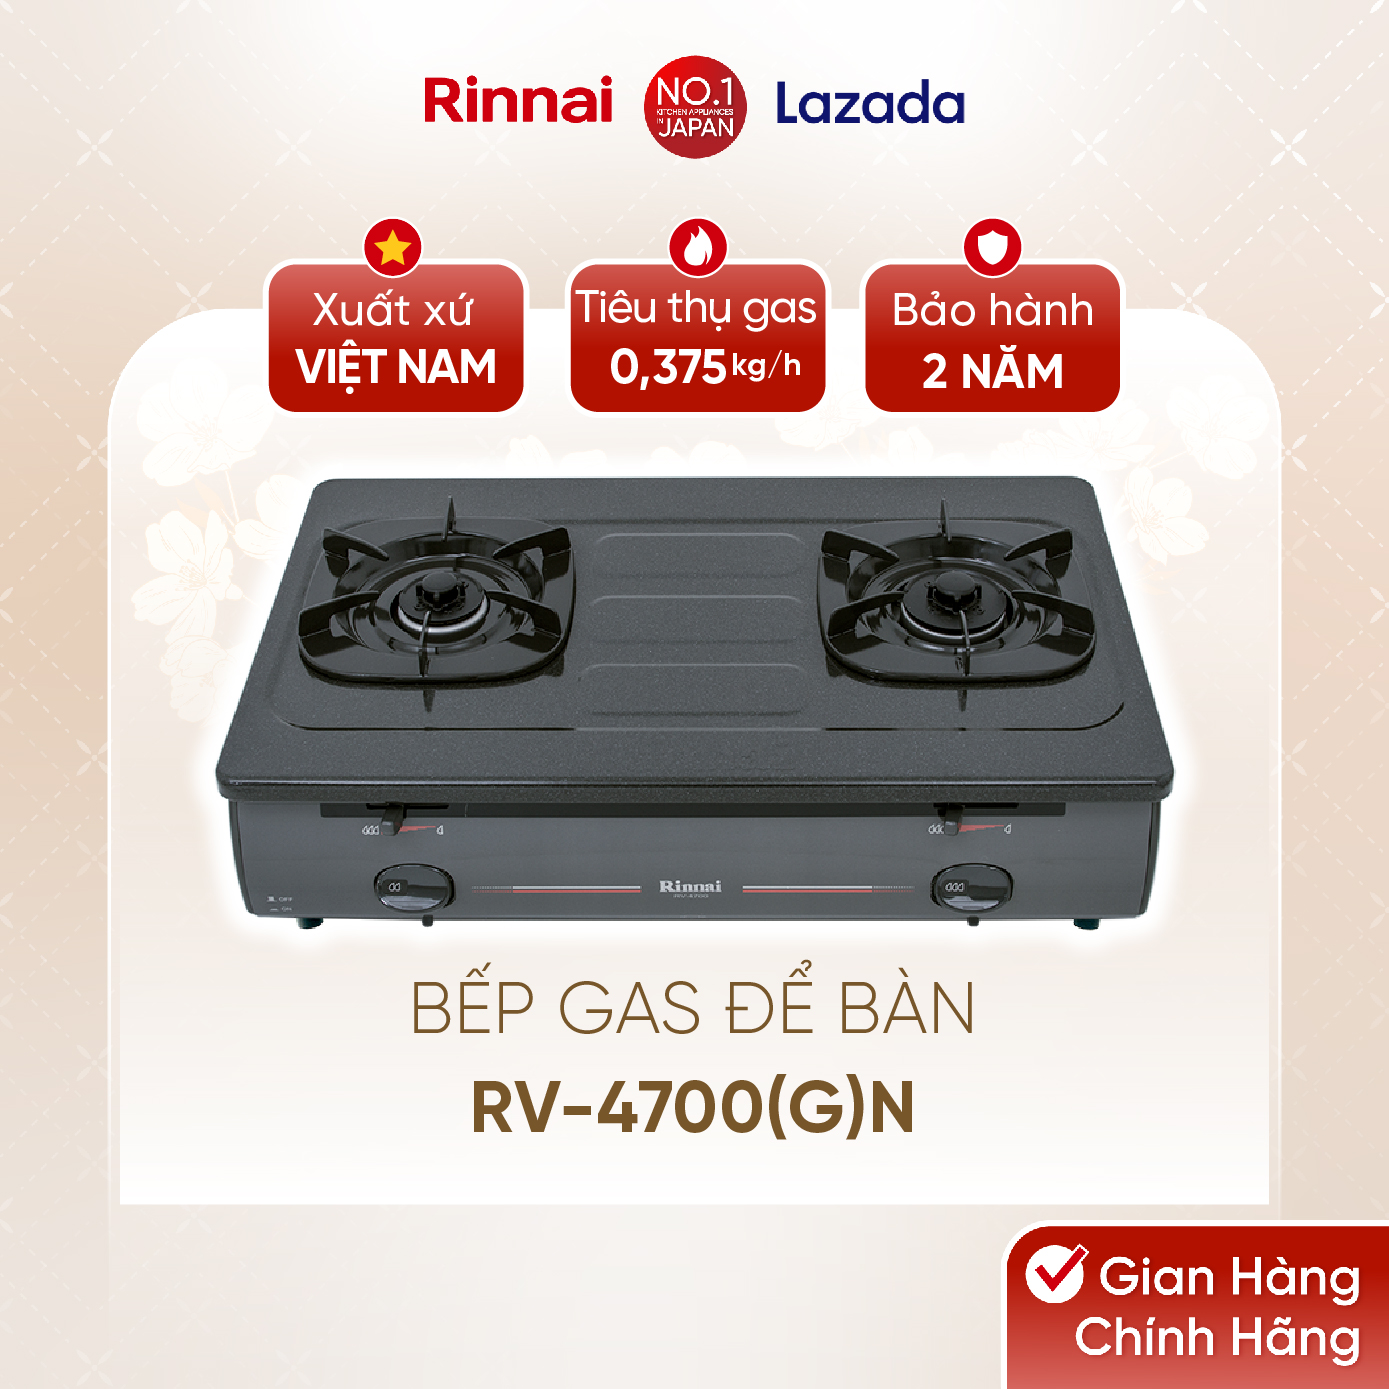 Bếp gas dương Rinnai RV-4700(G)N mặt bếp men và kiềng bếp men - Hàng chính hãng.